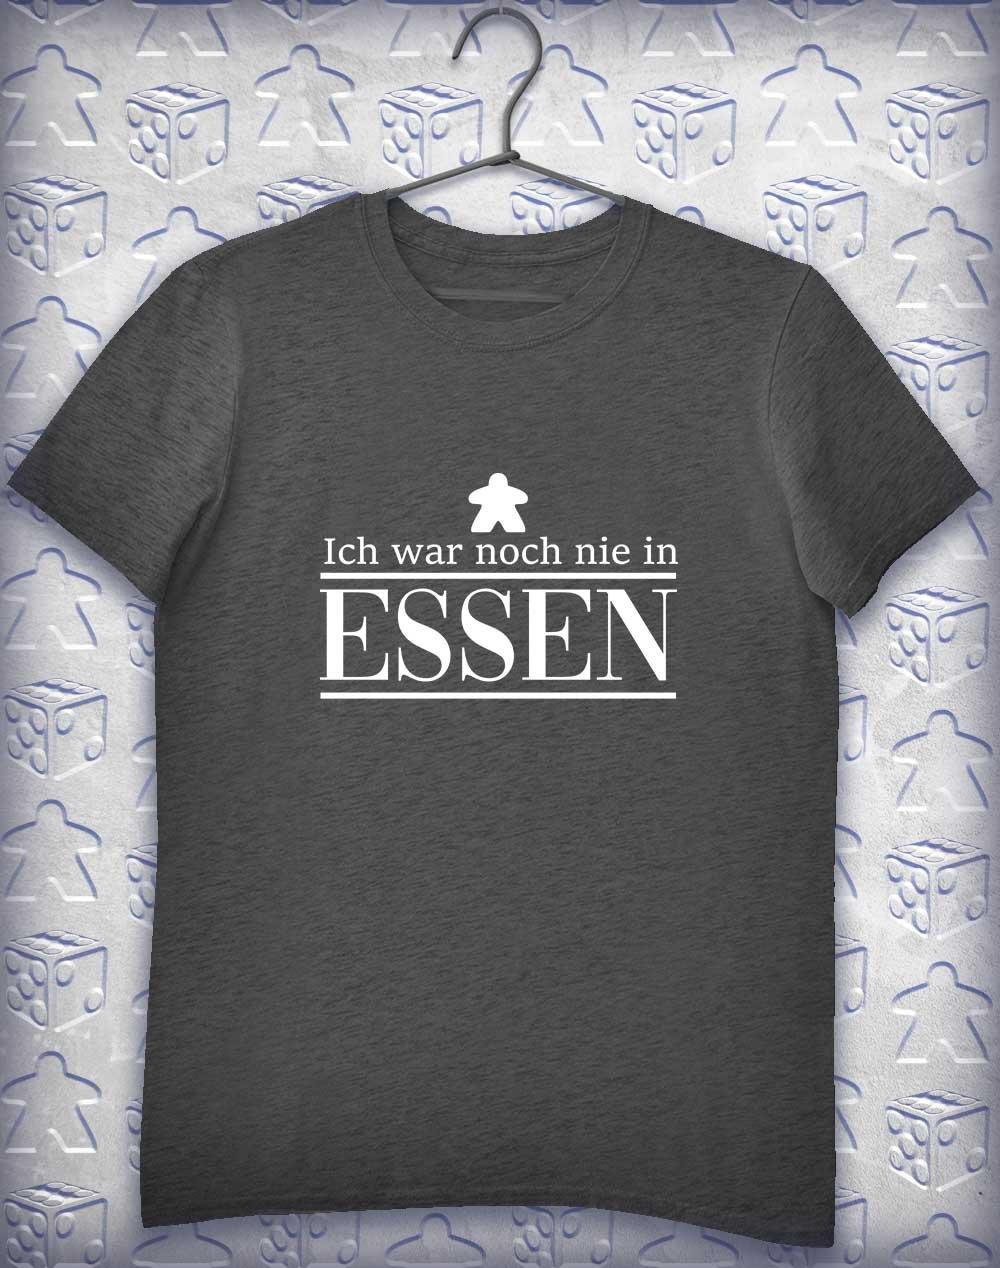 Never Been to Essen Alphagamer T-Shirt S / Dark Heather  - Off World Tees